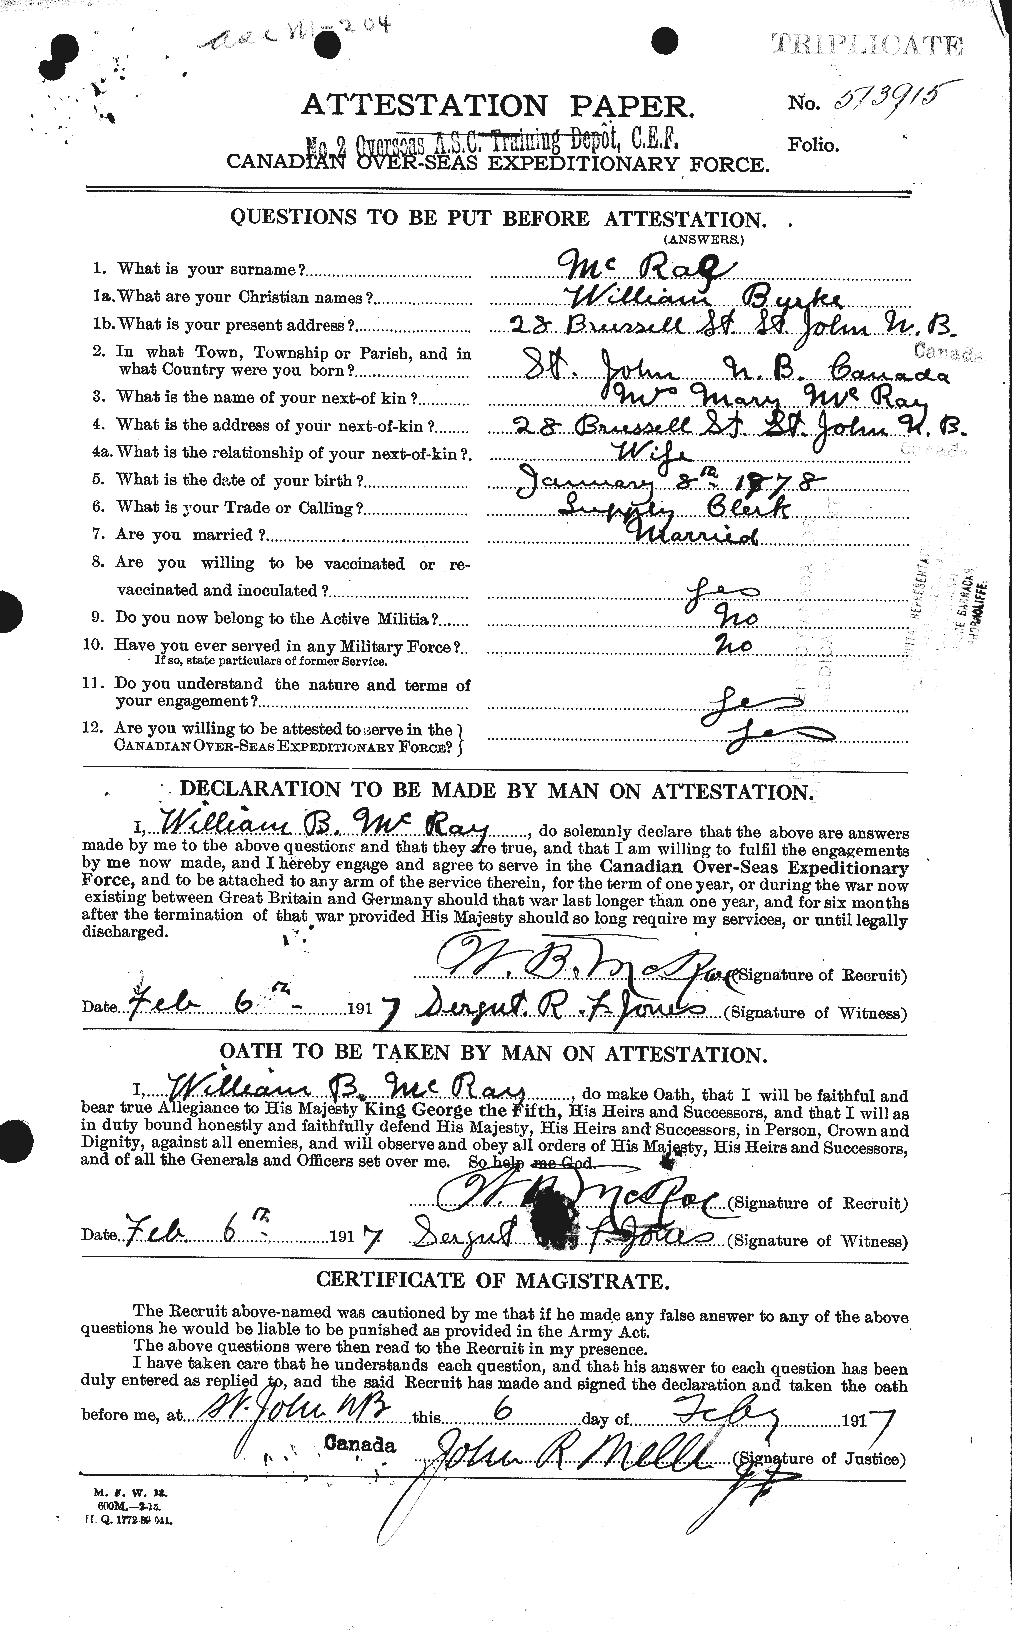 Dossiers du Personnel de la Première Guerre mondiale - CEC 542985a